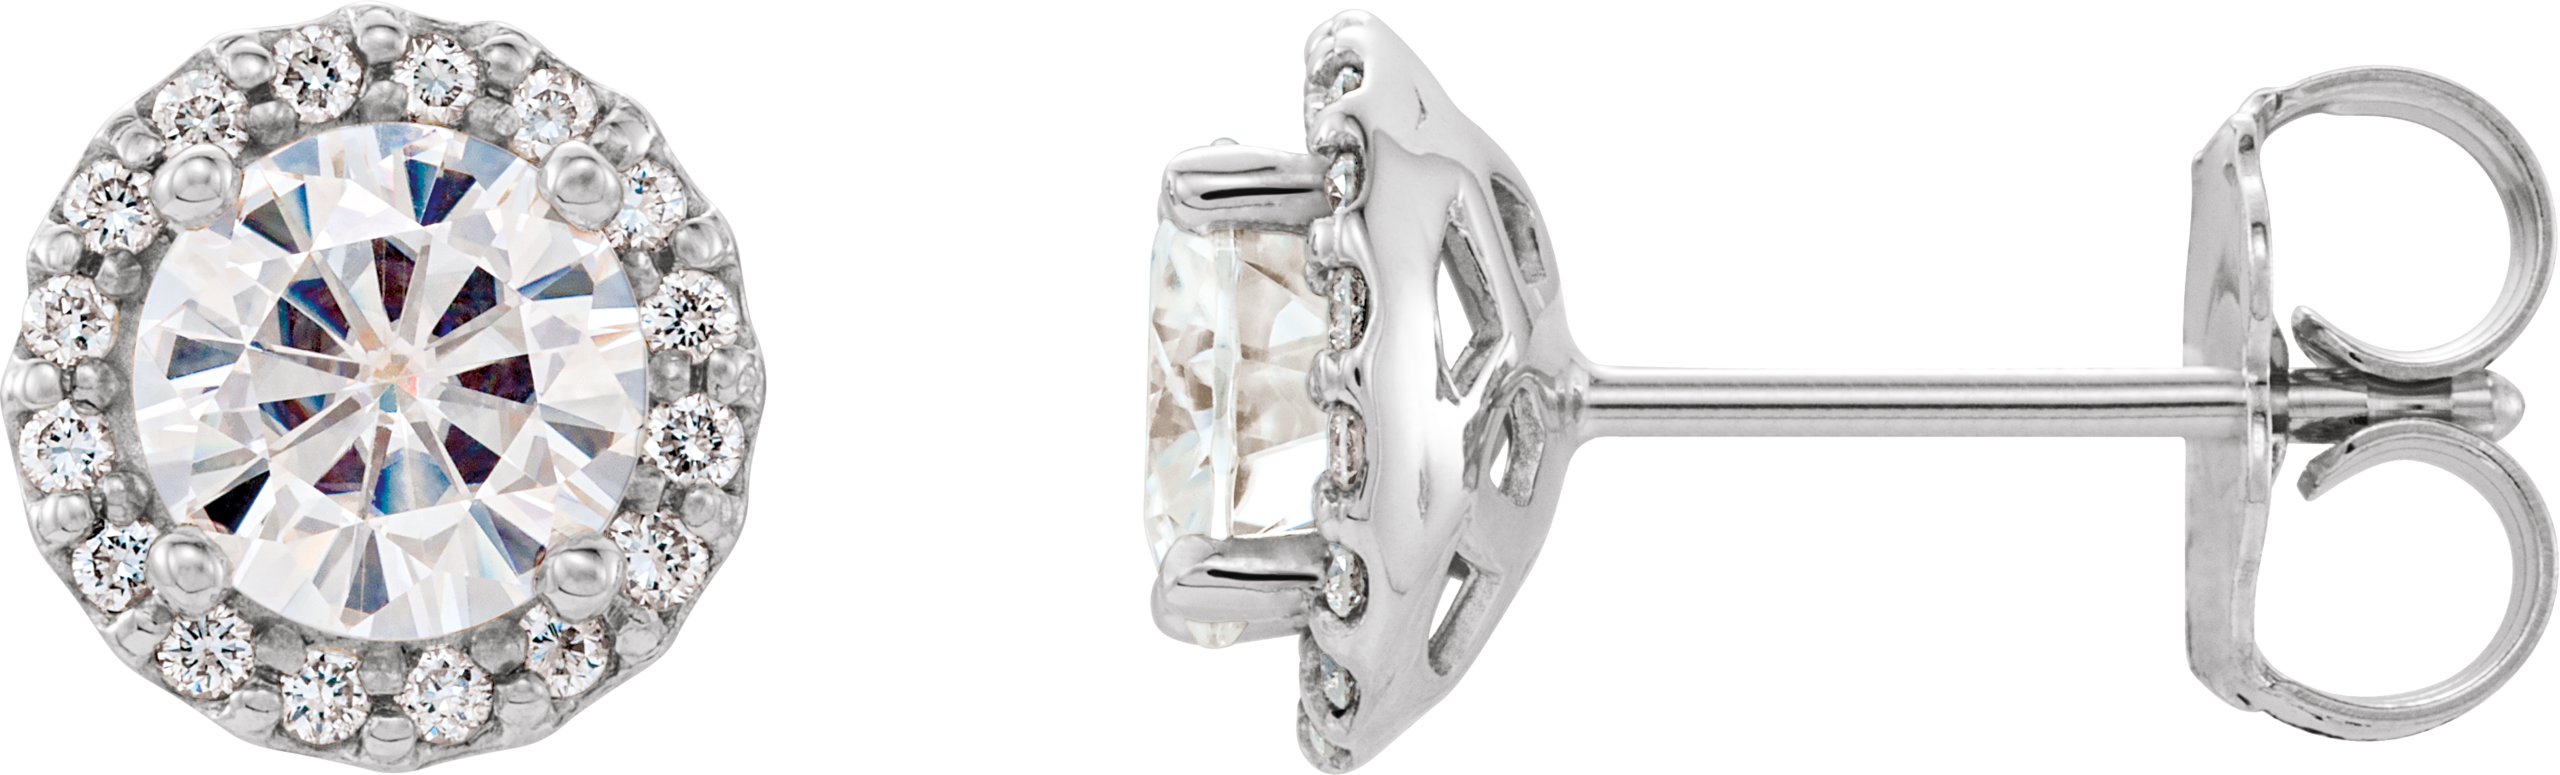 14K White 5 mm Round Forever One Moissanite and .125 CTW Diamond Earrings Ref. 12816030